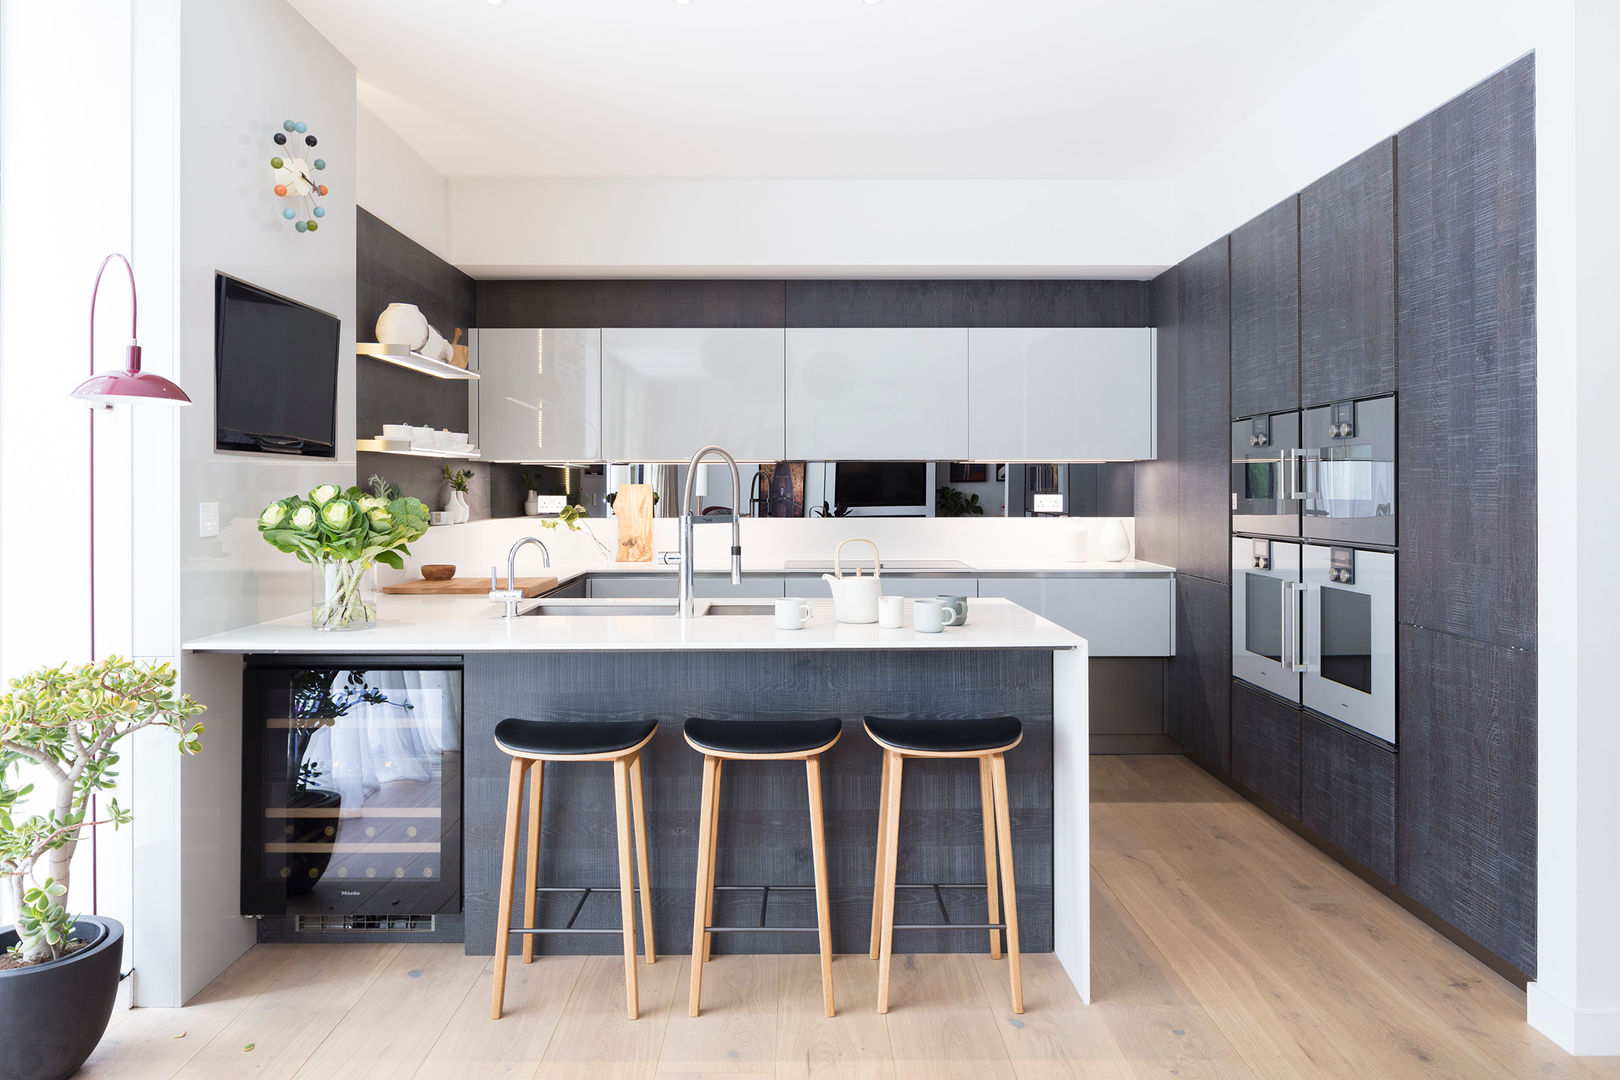 Modern New Home in Hampstead - kitchen bar Black and Milk | Interior Design | London Salle à manger moderne kitchen bar,kitchen,bar stool,black kitchen